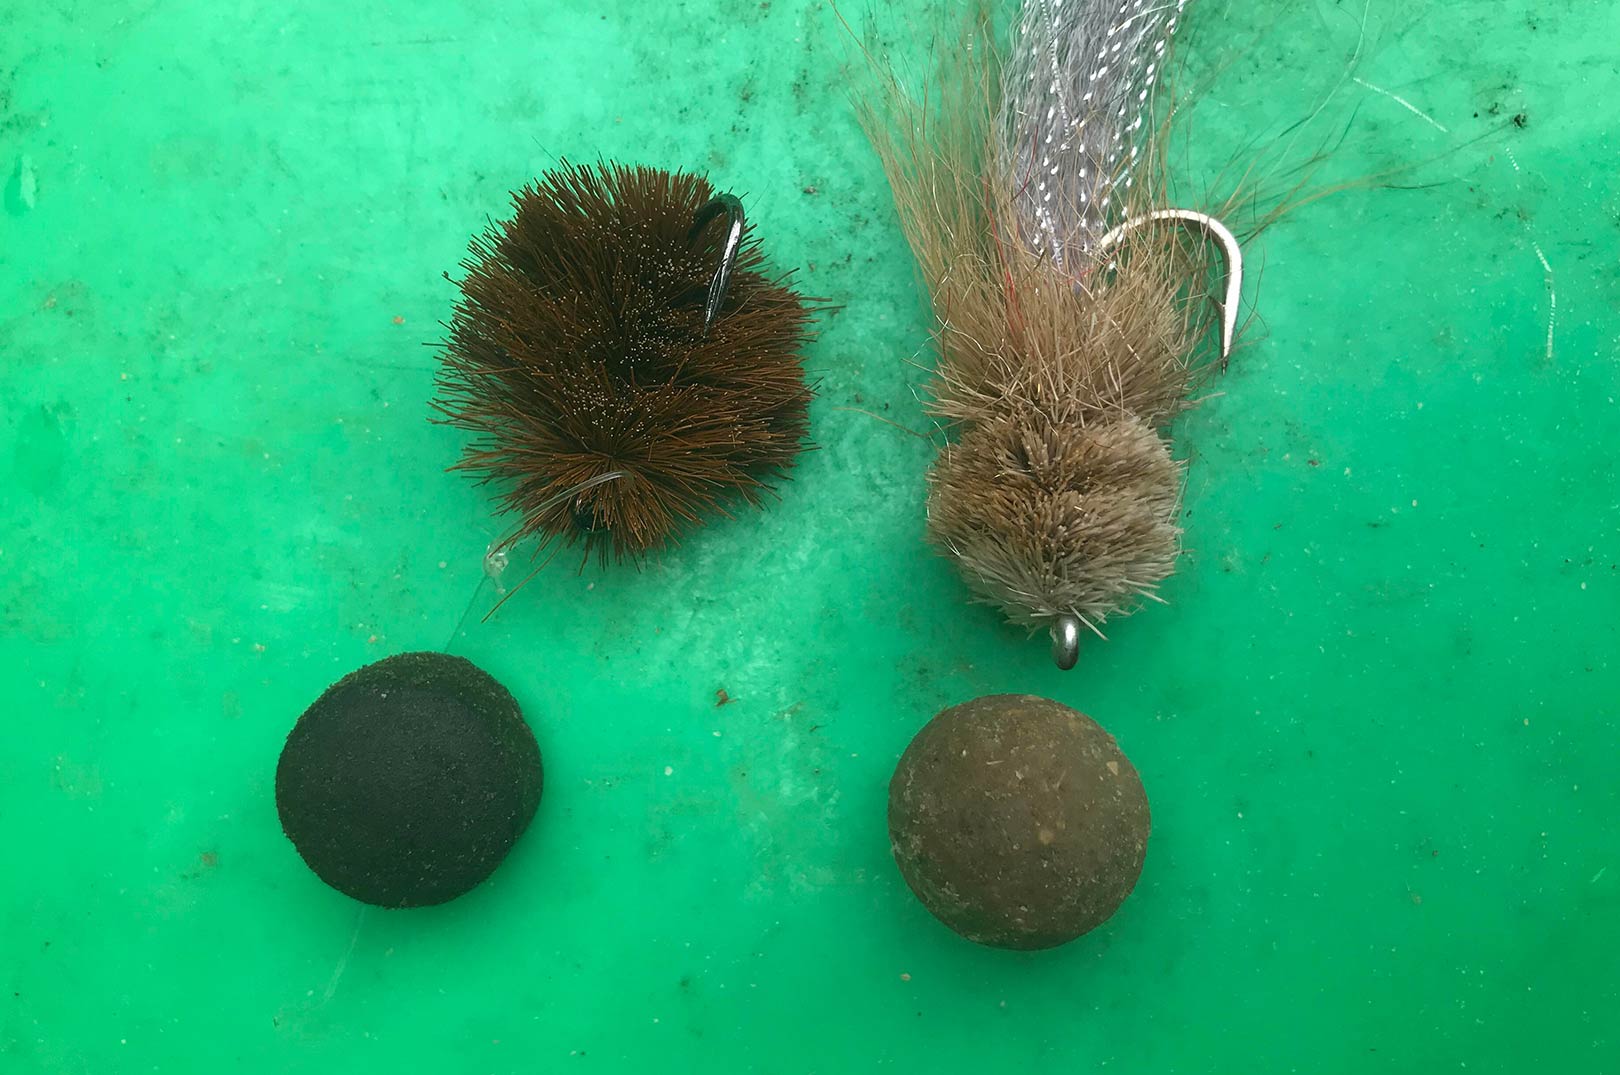 Det var pellets og fluer som disse der bliver brugt til fiskeriet efter blandt andet arapaima på fluestangen.